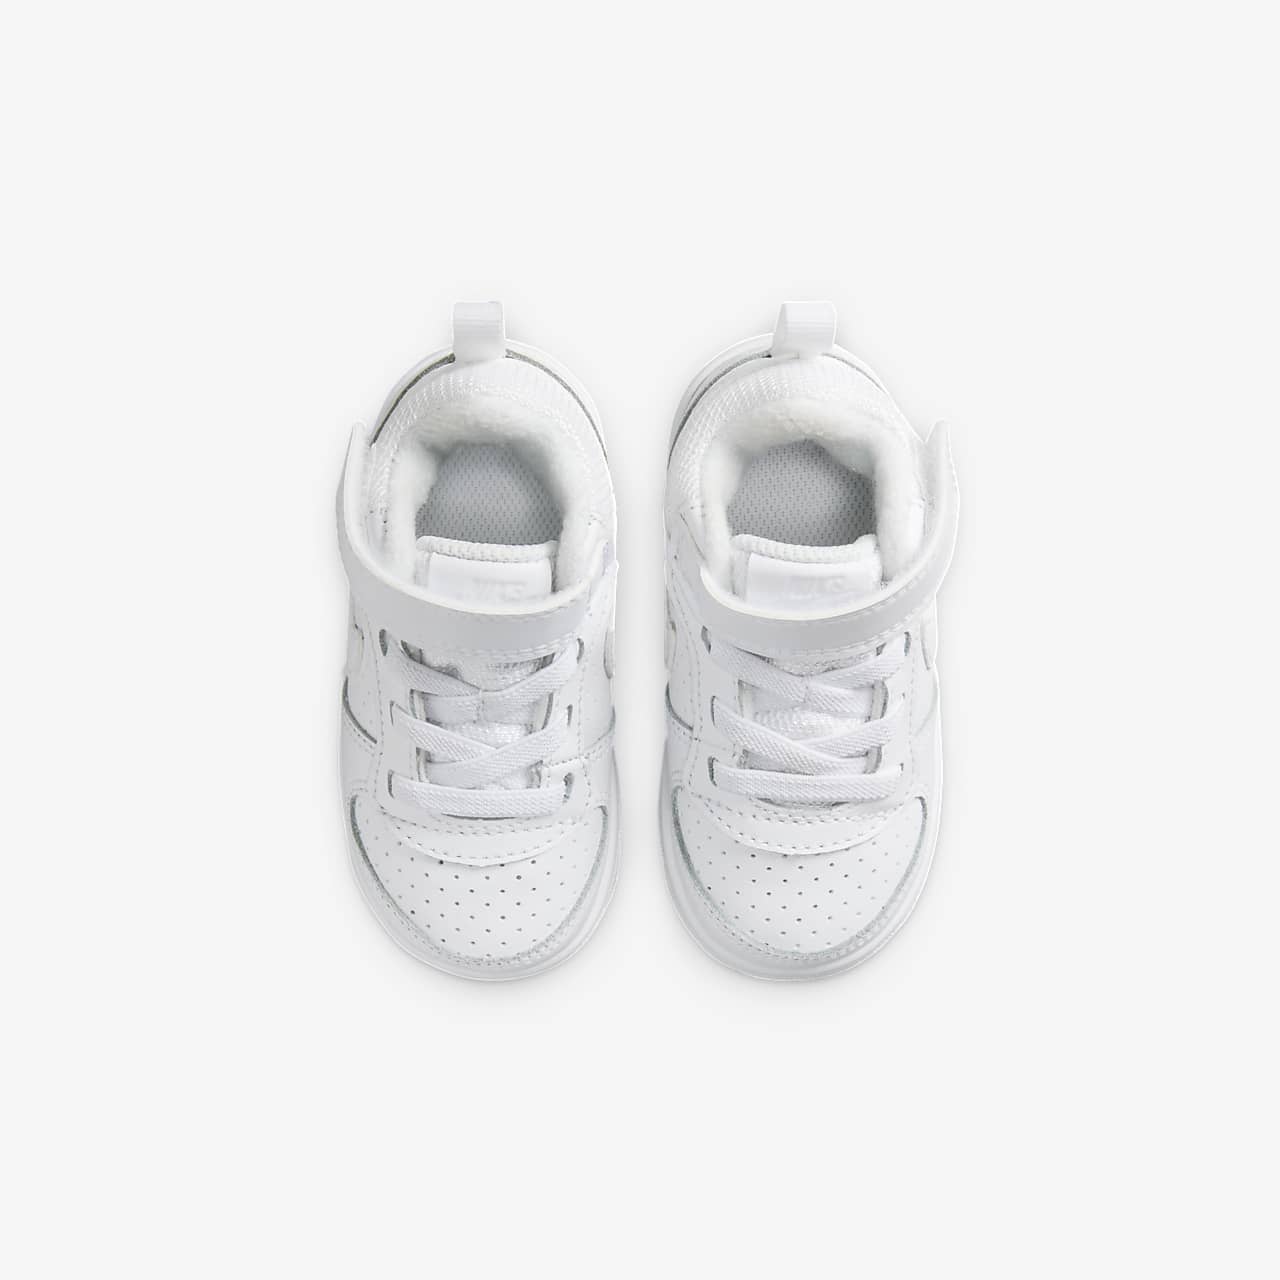 receta Entretener Anzai Calzado para bebé e infantil Nike Court Borough Mid. Nike.com